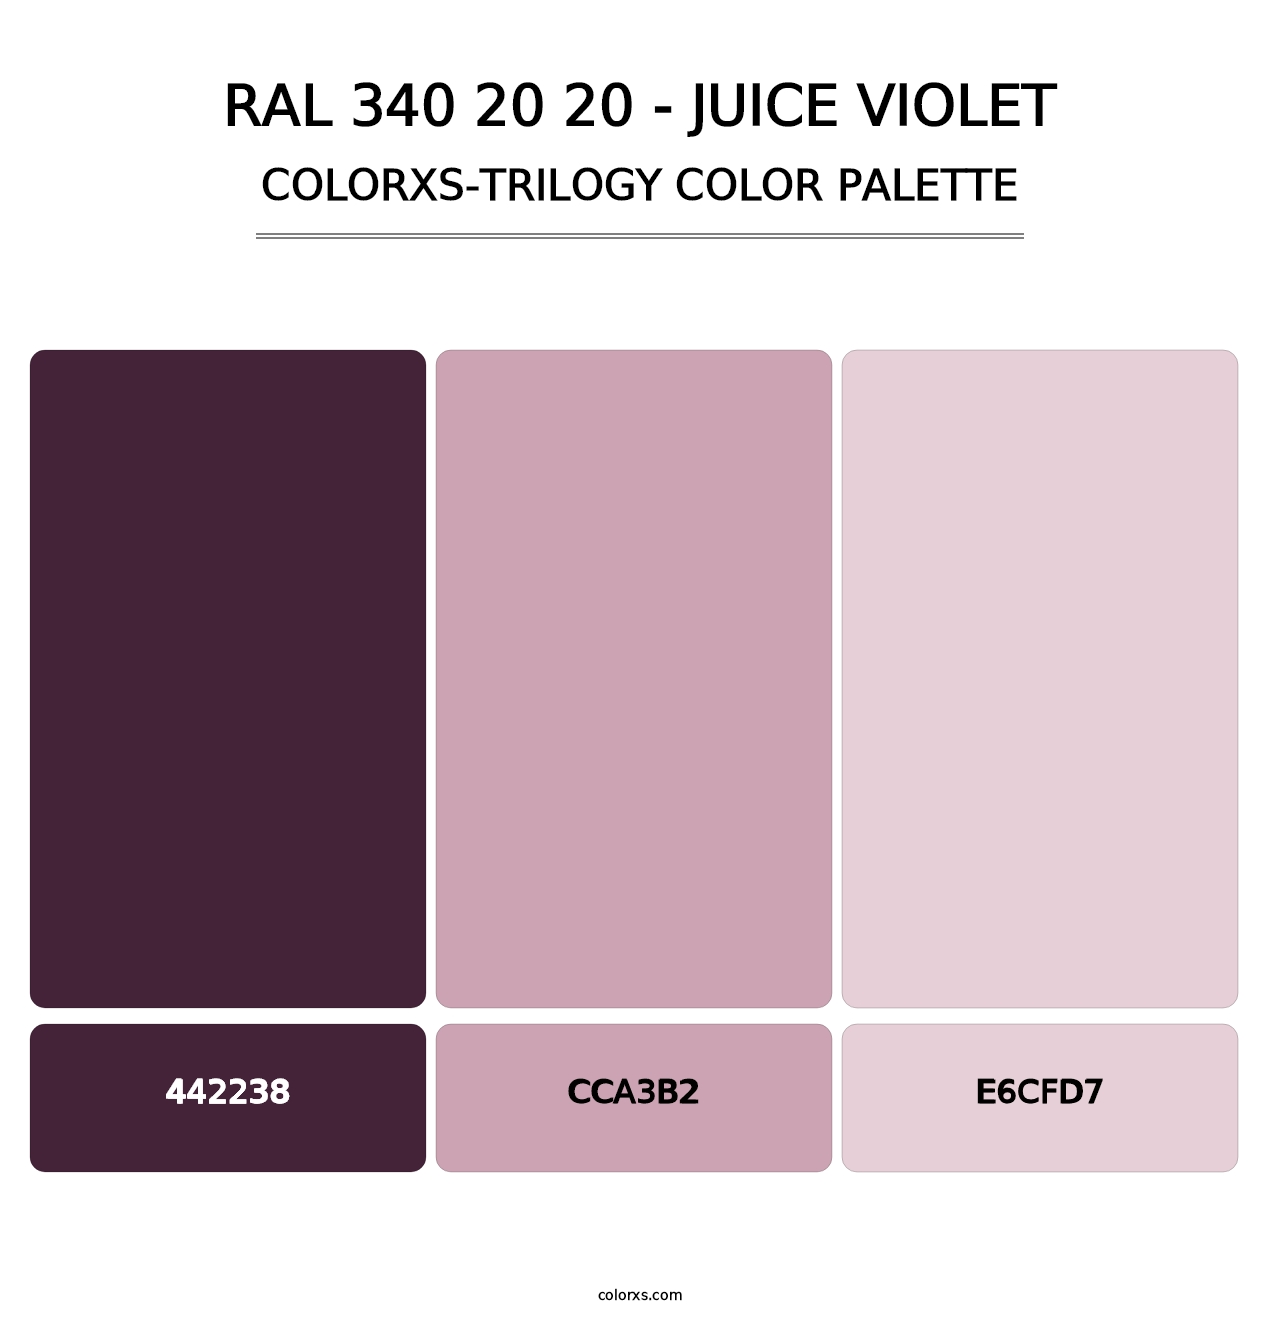 RAL 340 20 20 - Juice Violet - Colorxs Trilogy Palette